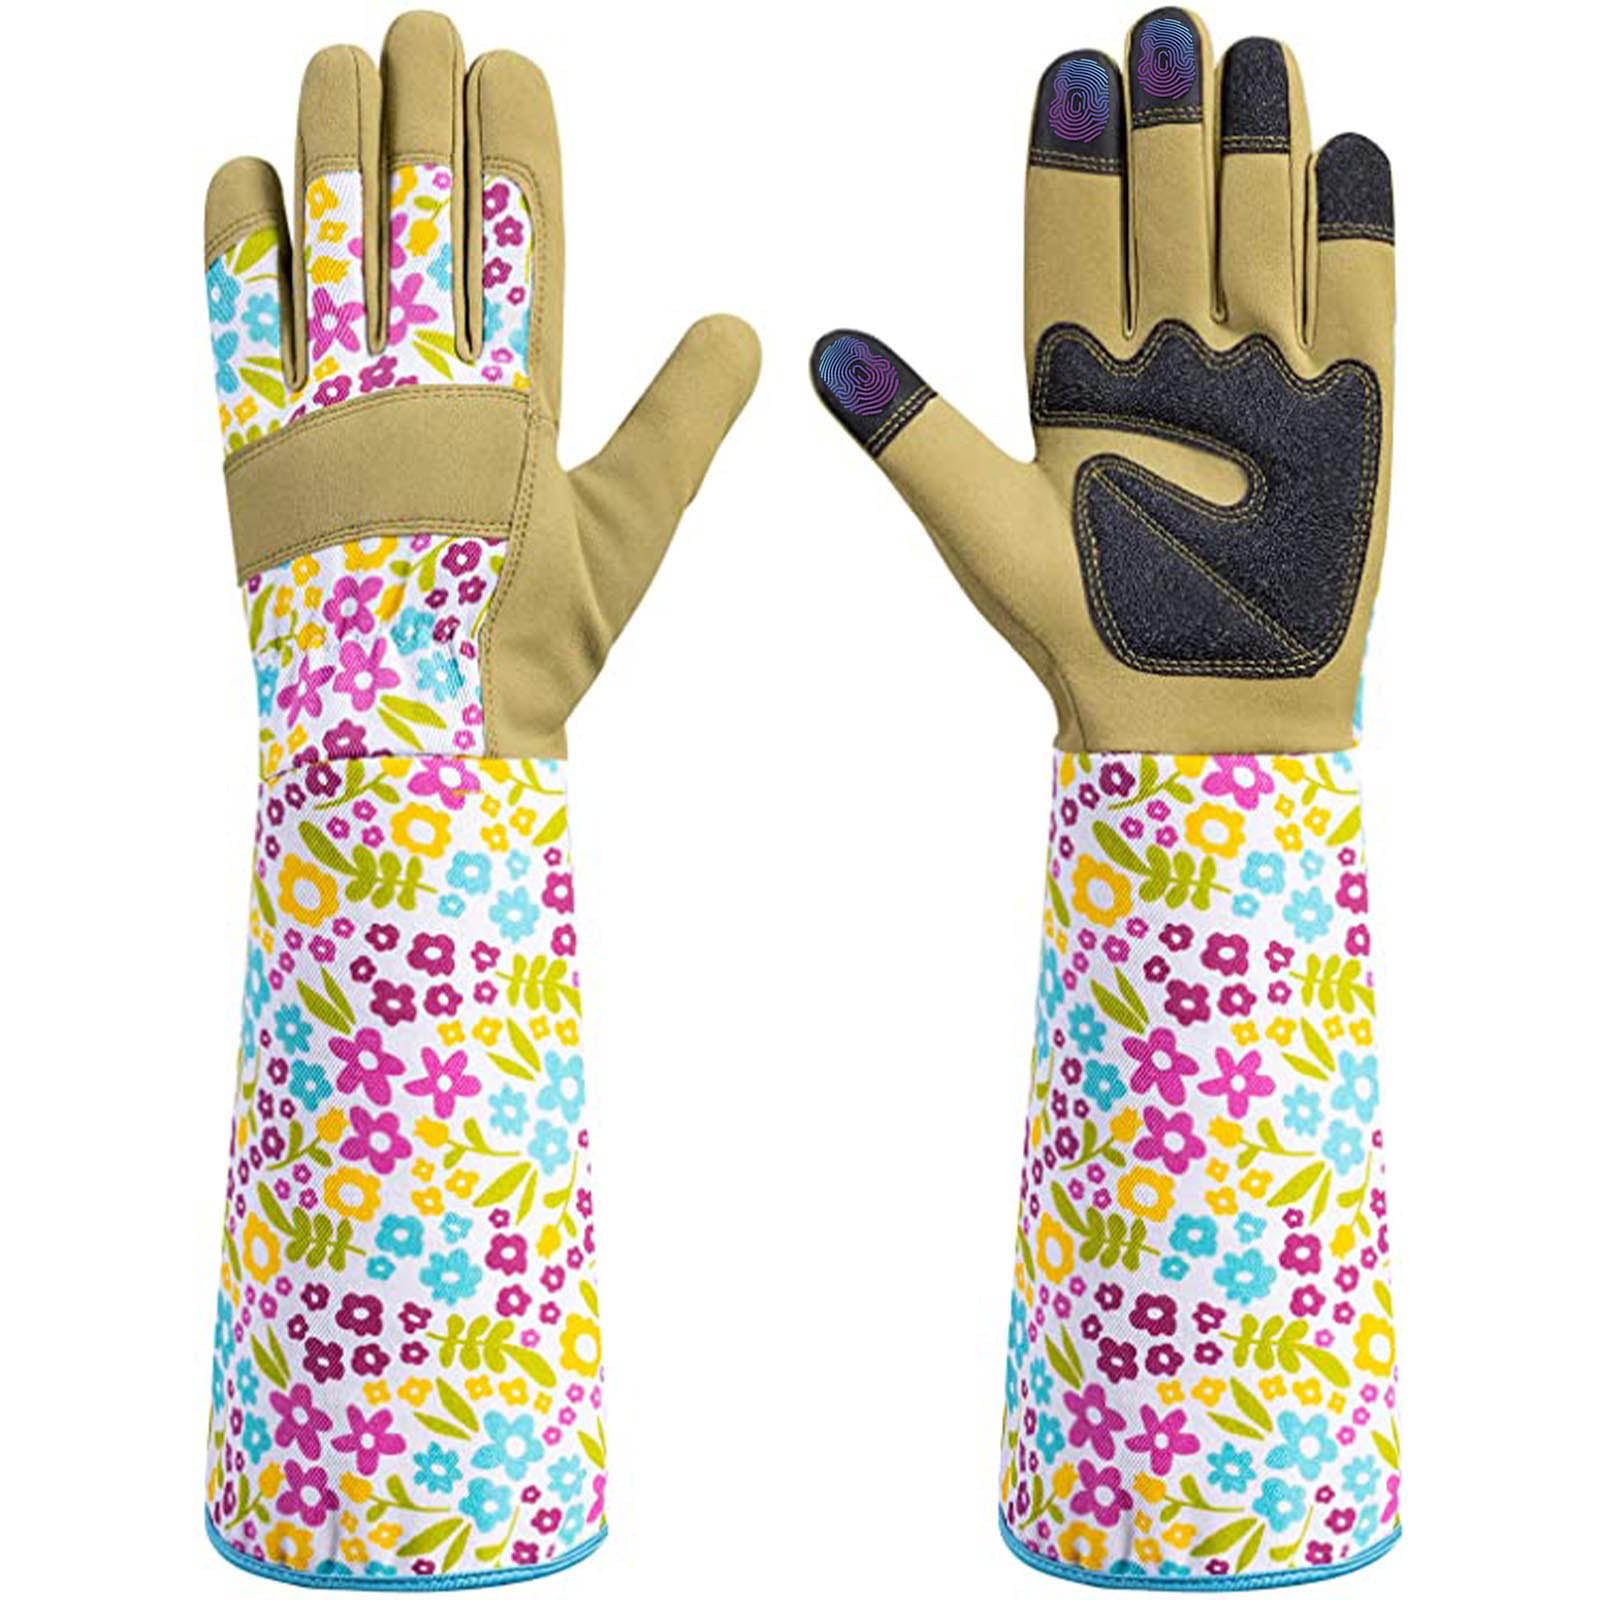 Ladies Women Girls Gardening Leather Gloves Thorn Proof Garden Work Gloves NEW 